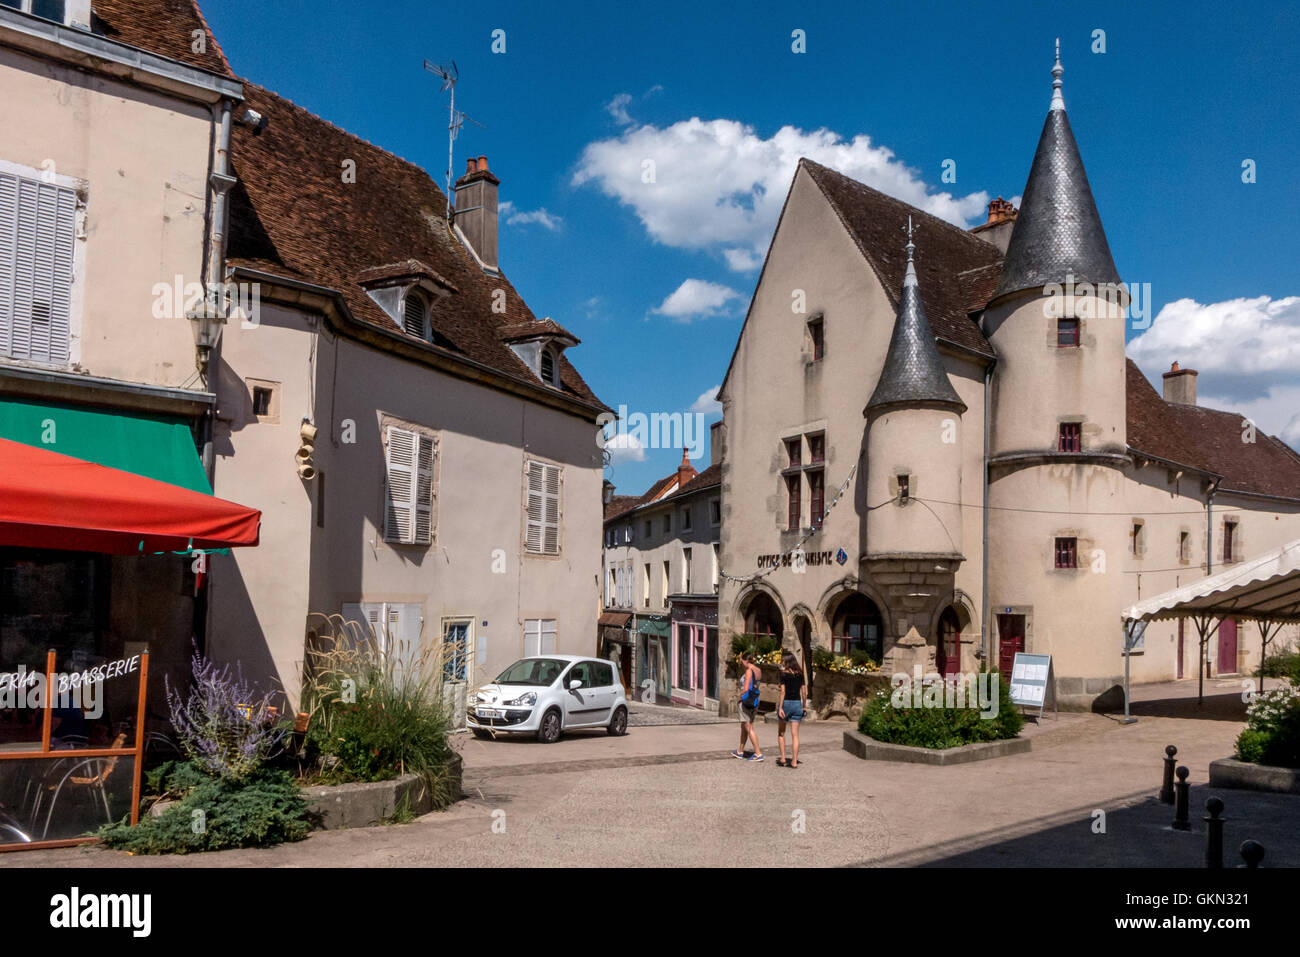 Le village de Arnay Le Duc en Bourgogne France. Banque D'Images